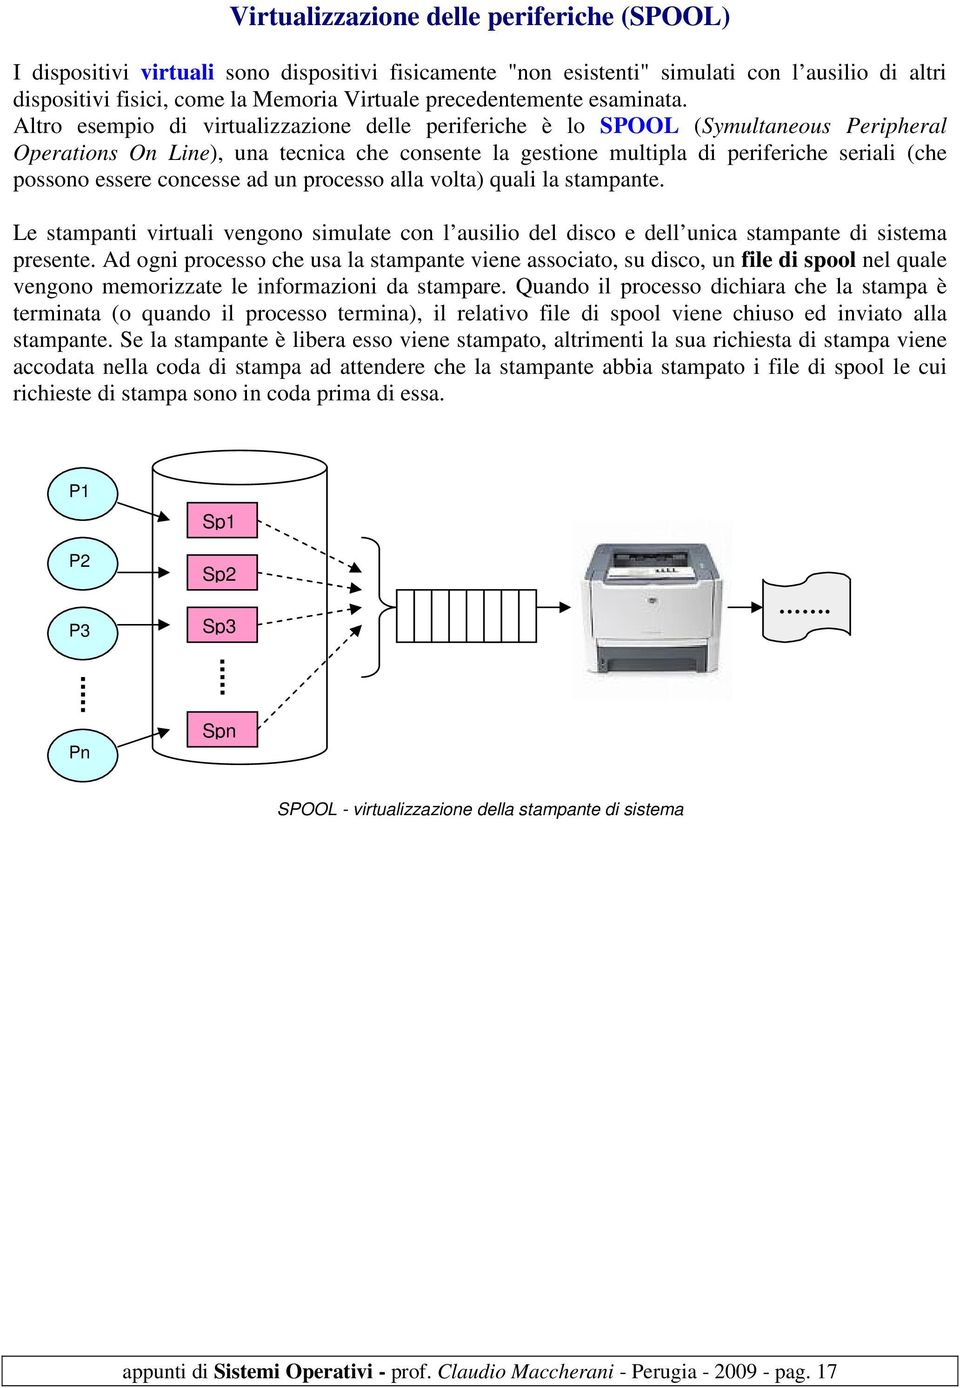 Altro esempio di virtualizzazione delle periferiche è lo SPOOL (Symultaneous Peripheral Operations On Line), una tecnica che consente la gestione multipla di periferiche seriali (che possono essere